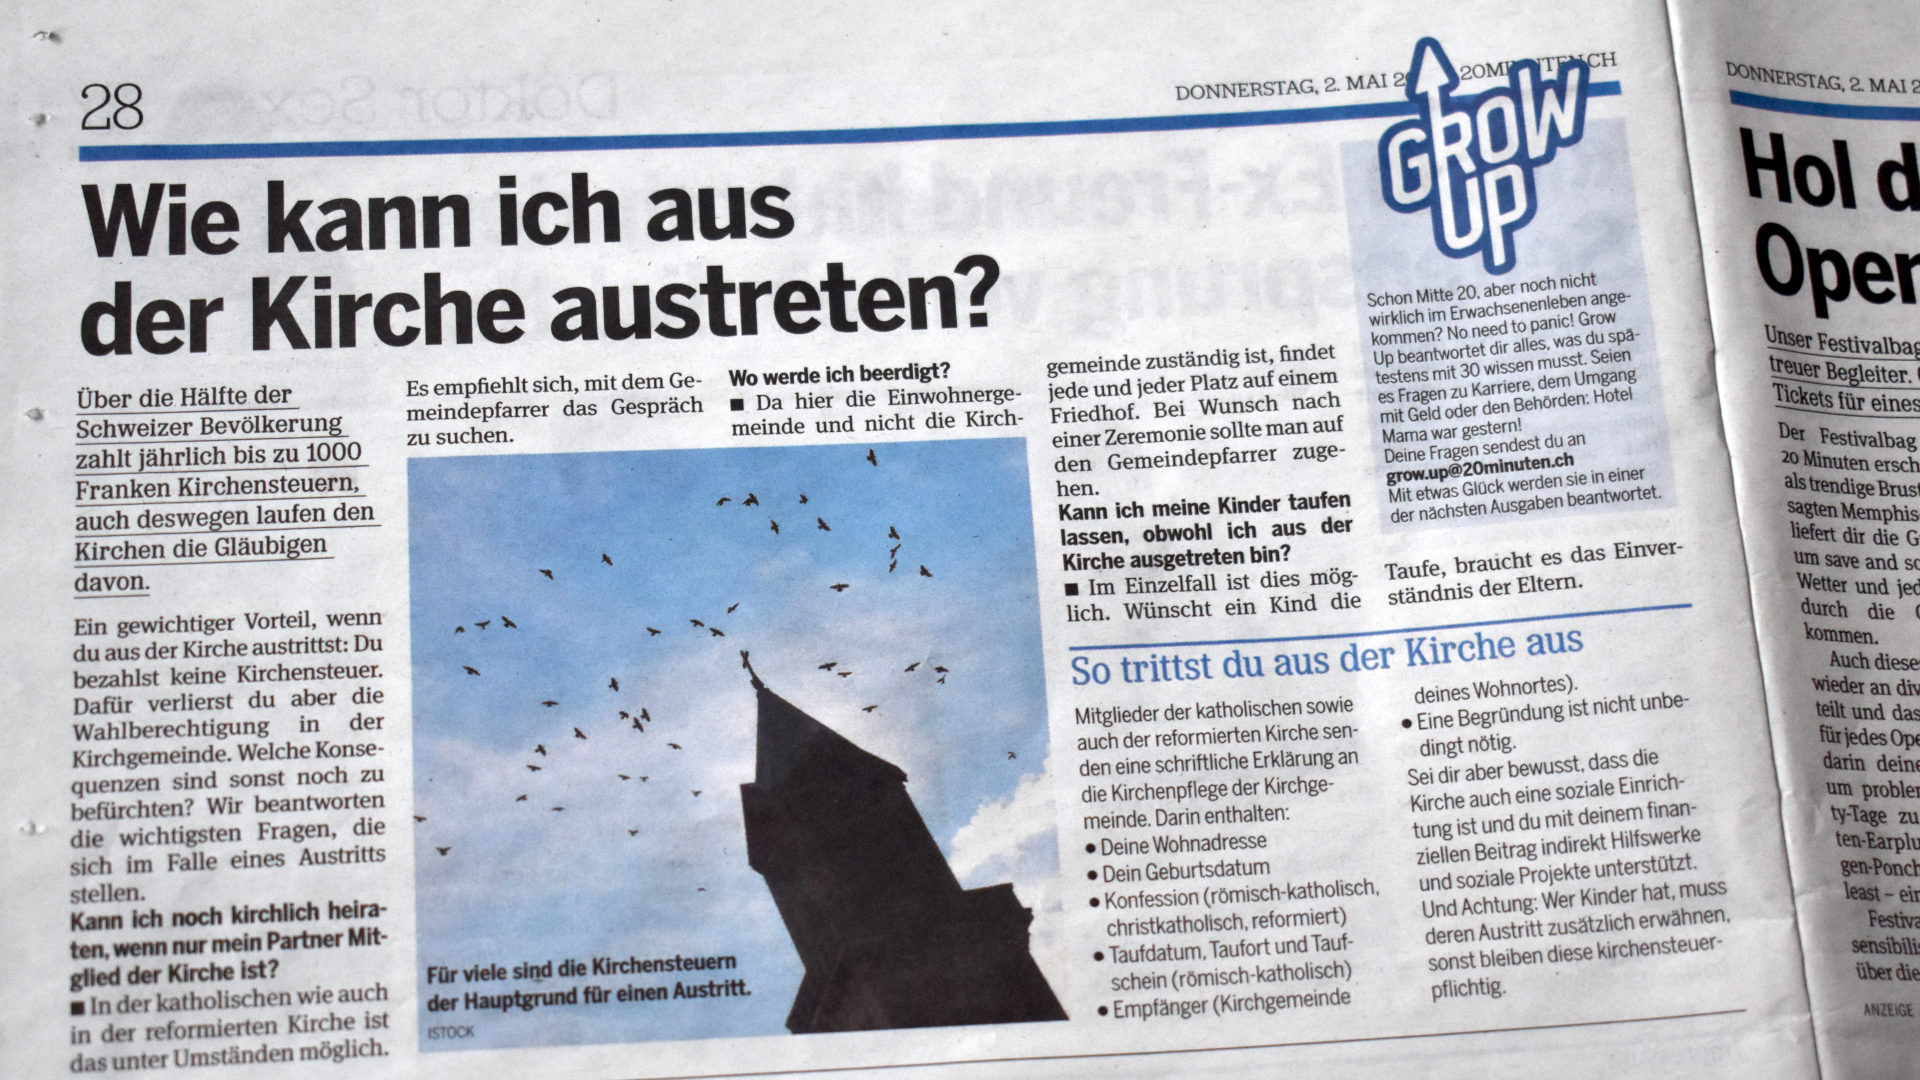 Spartipp Kirchenaustritt - der Beitrag in der Pendlerzeitung «20 Minuten» erschien online und in mehreren regionalen Printausgaben, so auch in der Ausgabe Zürich.